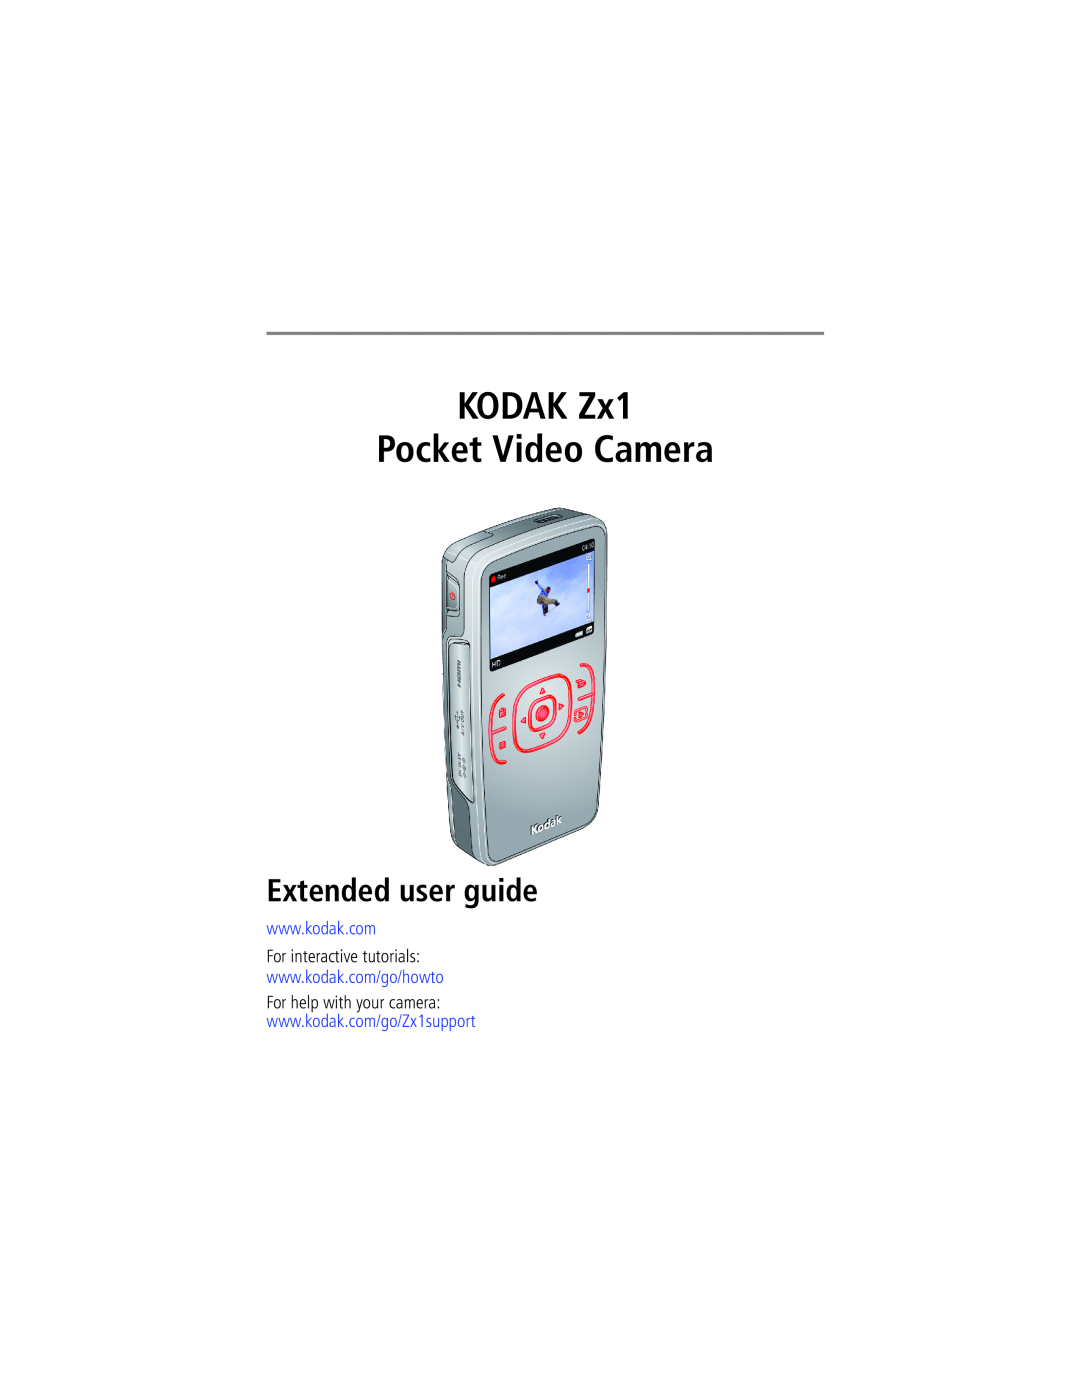 Kodak 1455013 manual KODAK Zx1 Pocket Video Camera, Extended user guide, For interactive tutorials 